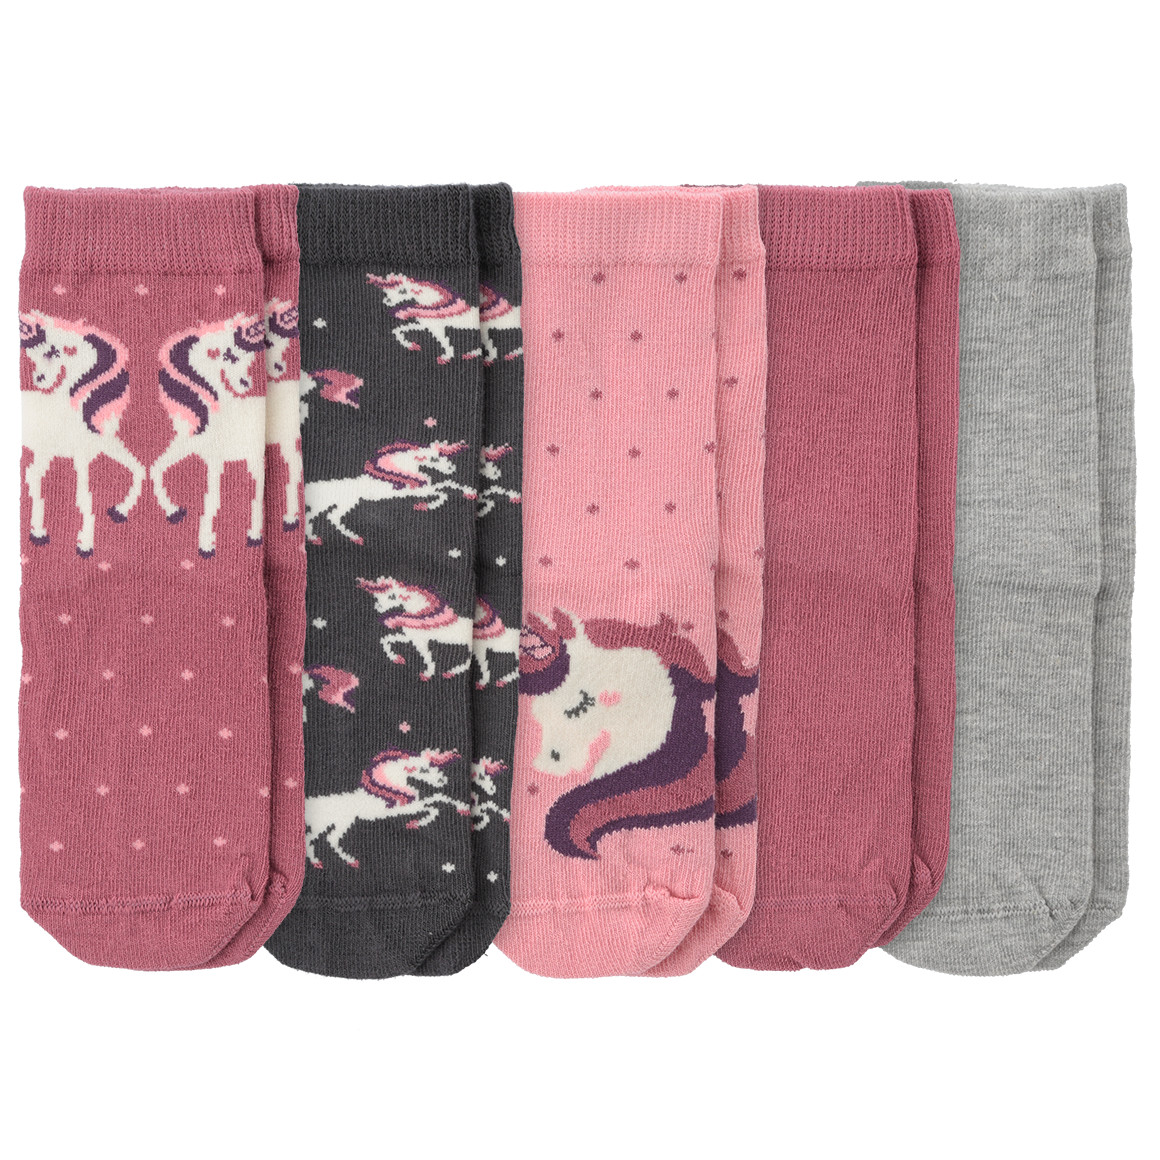 5 Paar Mädchen Socken mit Einhorn-Motiven | Ernsting's family